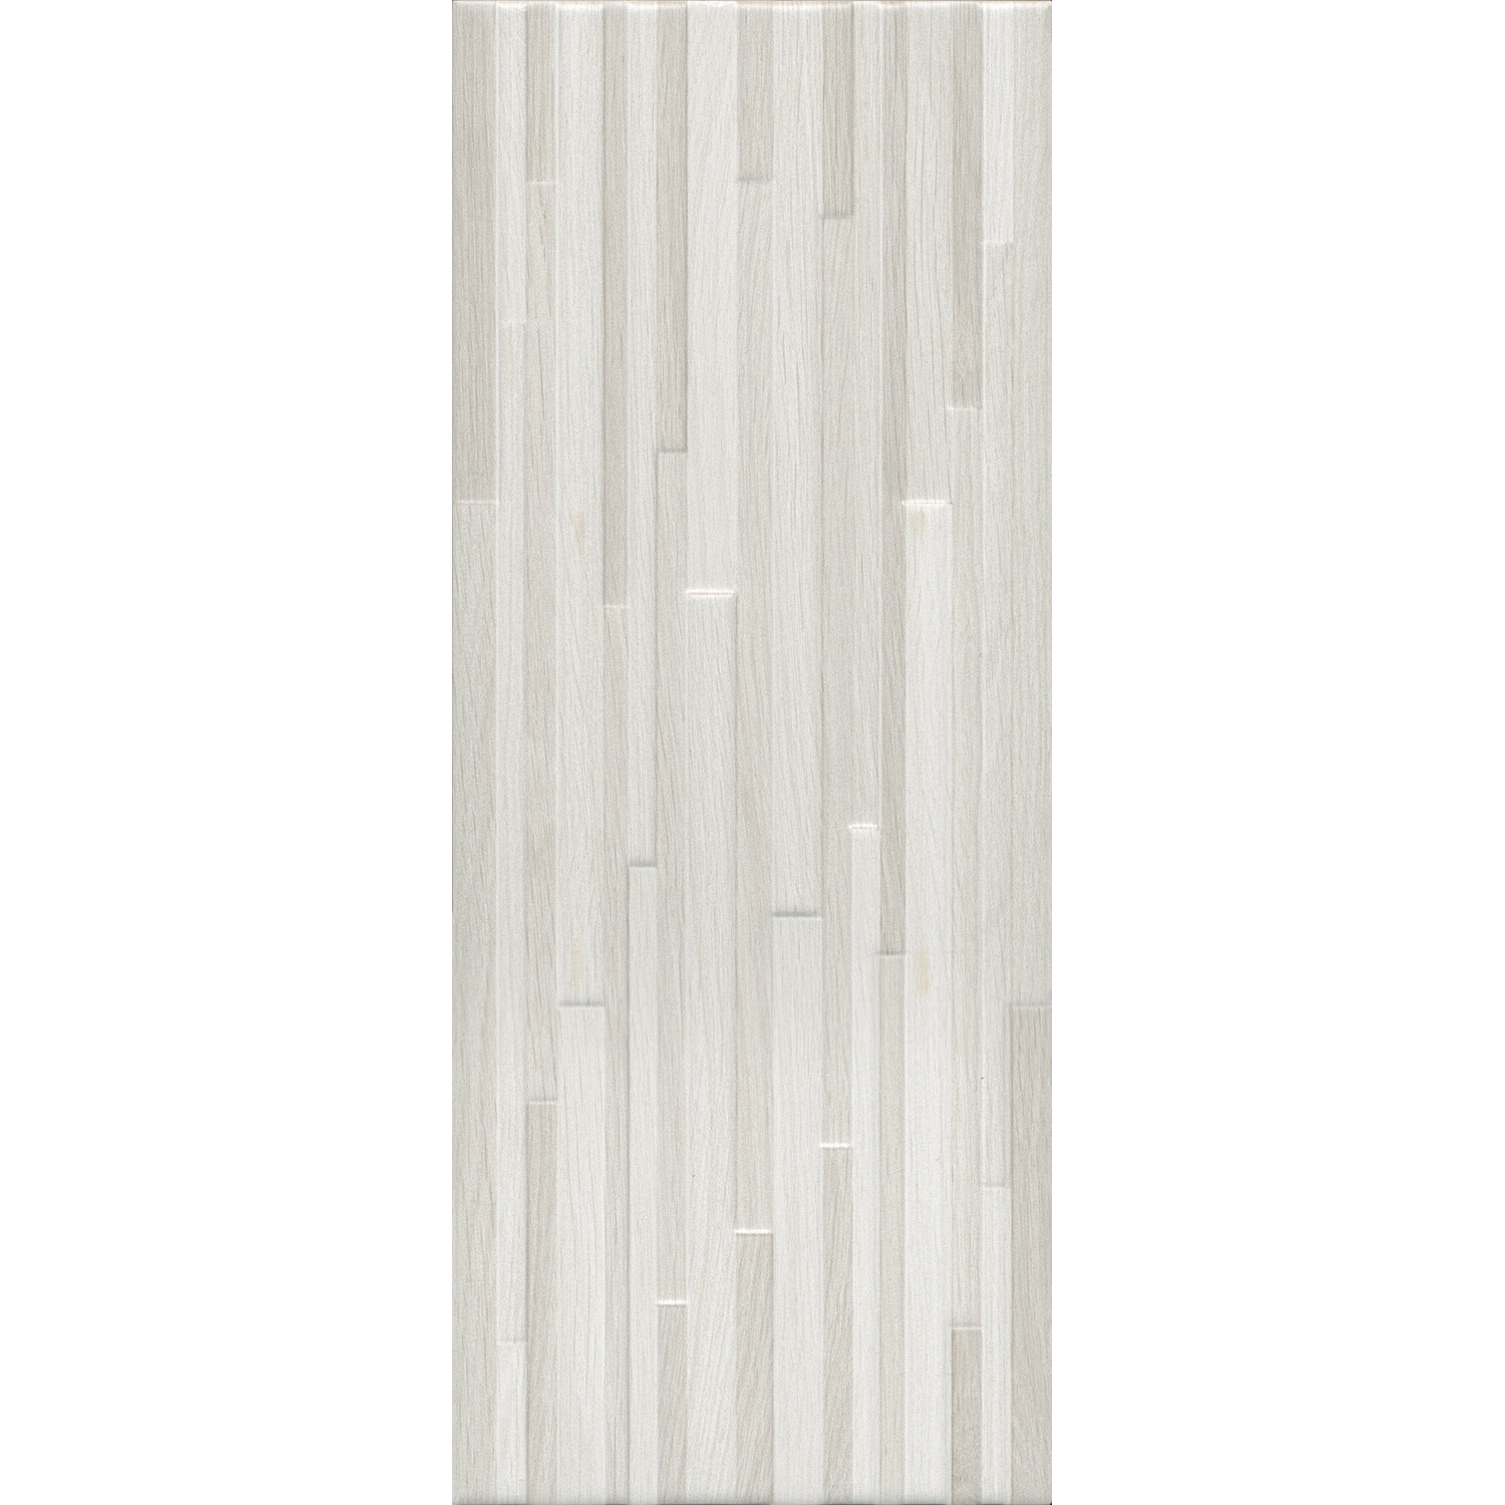 Плитка Kerama Marazzi Ауленти беж светлый структура 7220 20x50 см плитка облицовочная нефрит террацио белая с крошкой 600x200x9 мм 10 шт 1 2 кв м